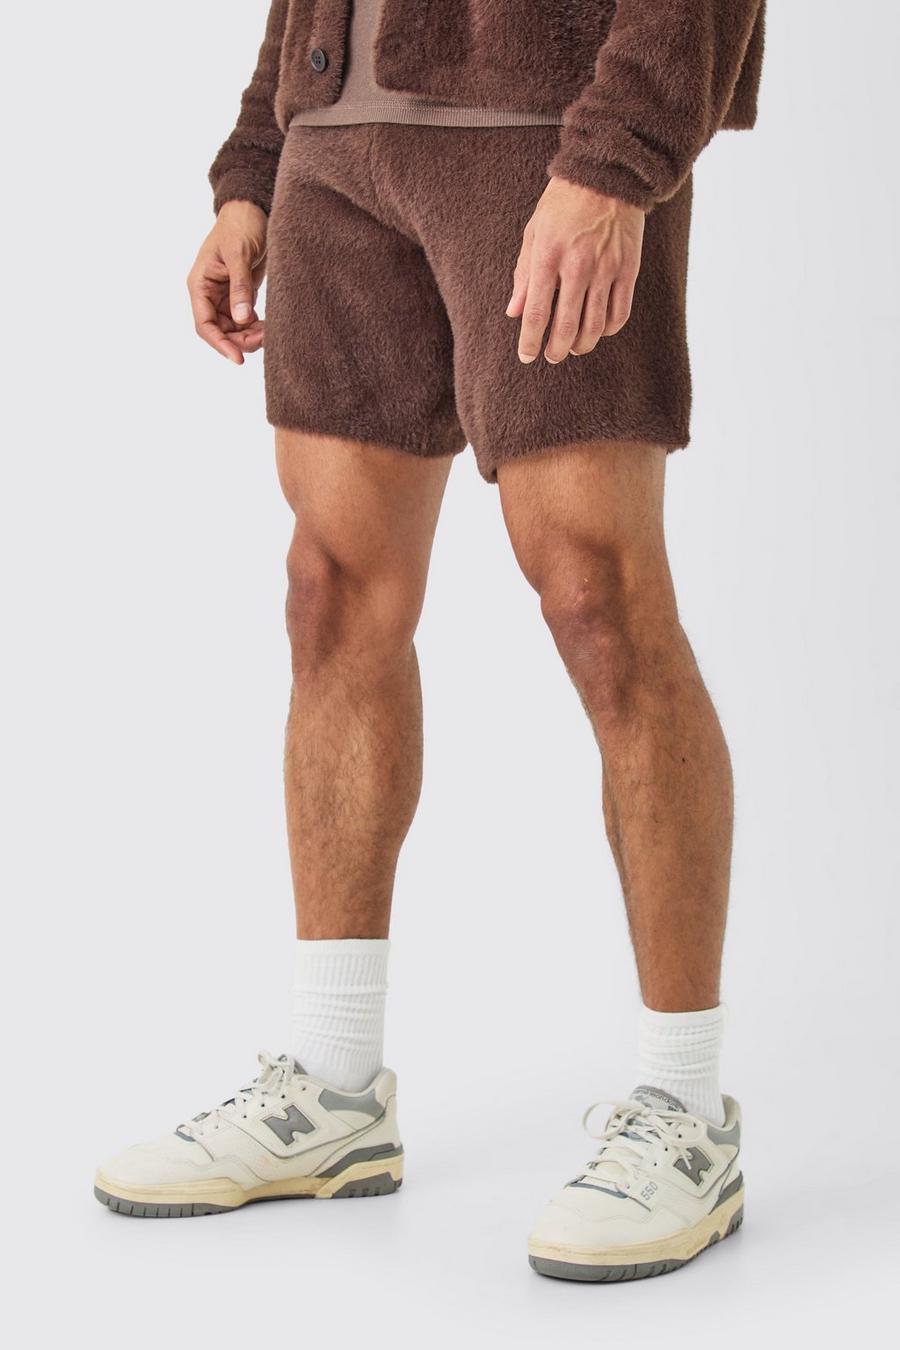 Lockere flauschige Shorts in Braun, Brown